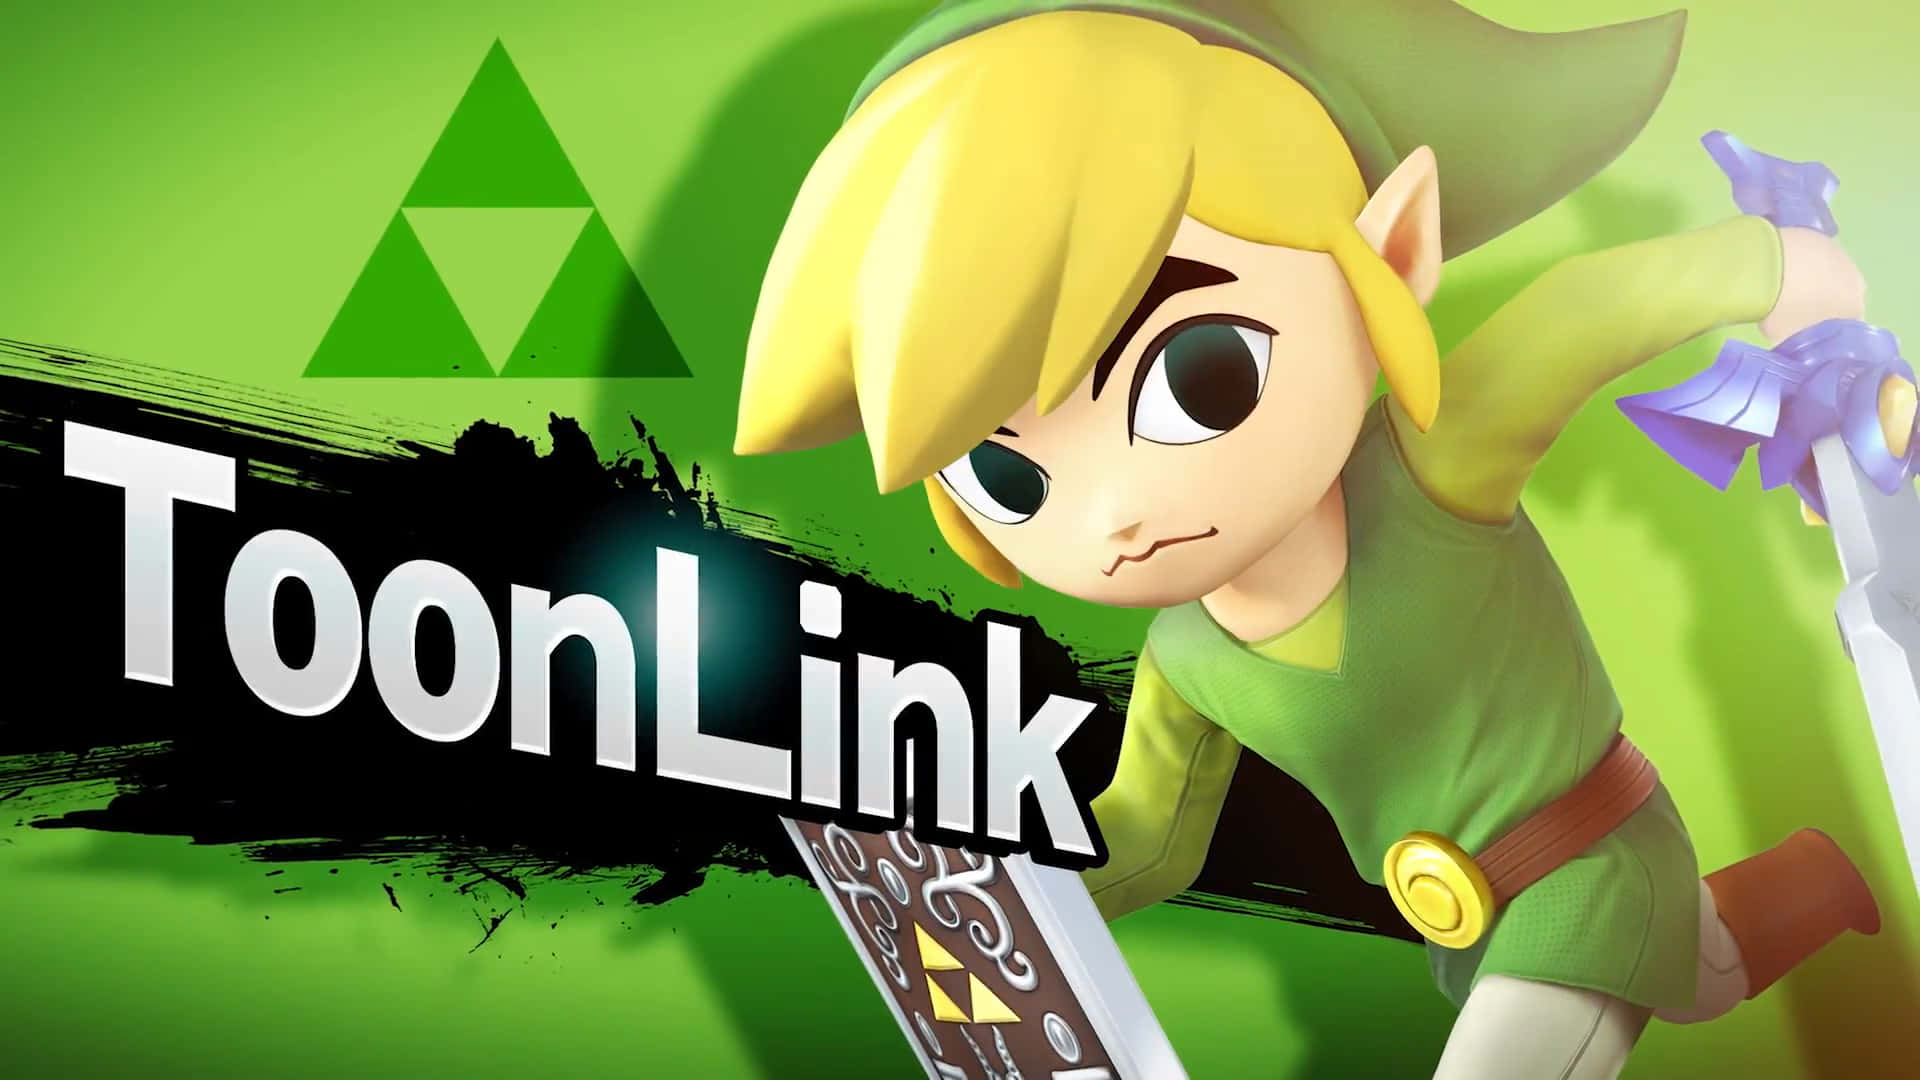 Toon Link From The Legend Of Zelda